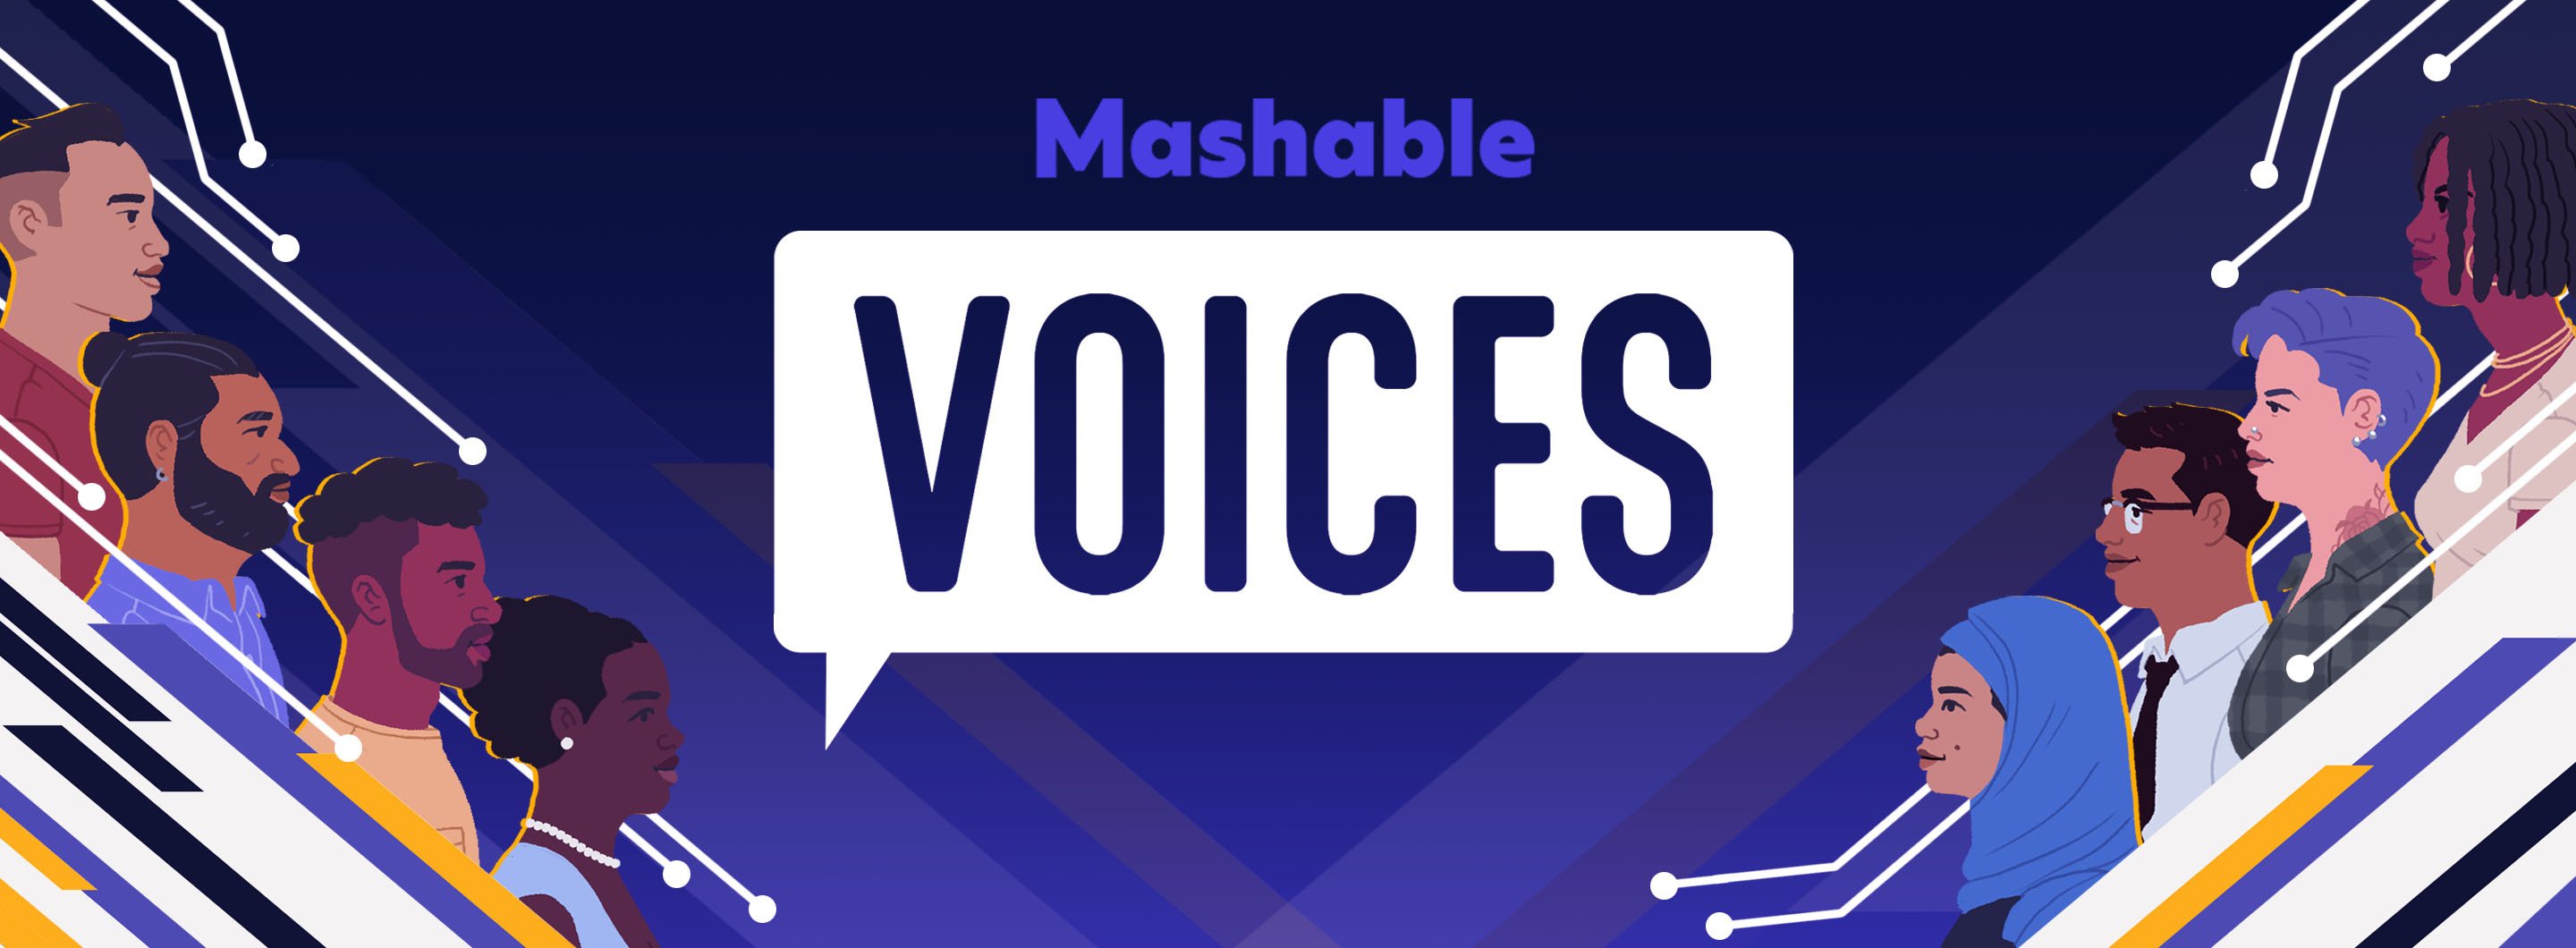 Mashable Voices